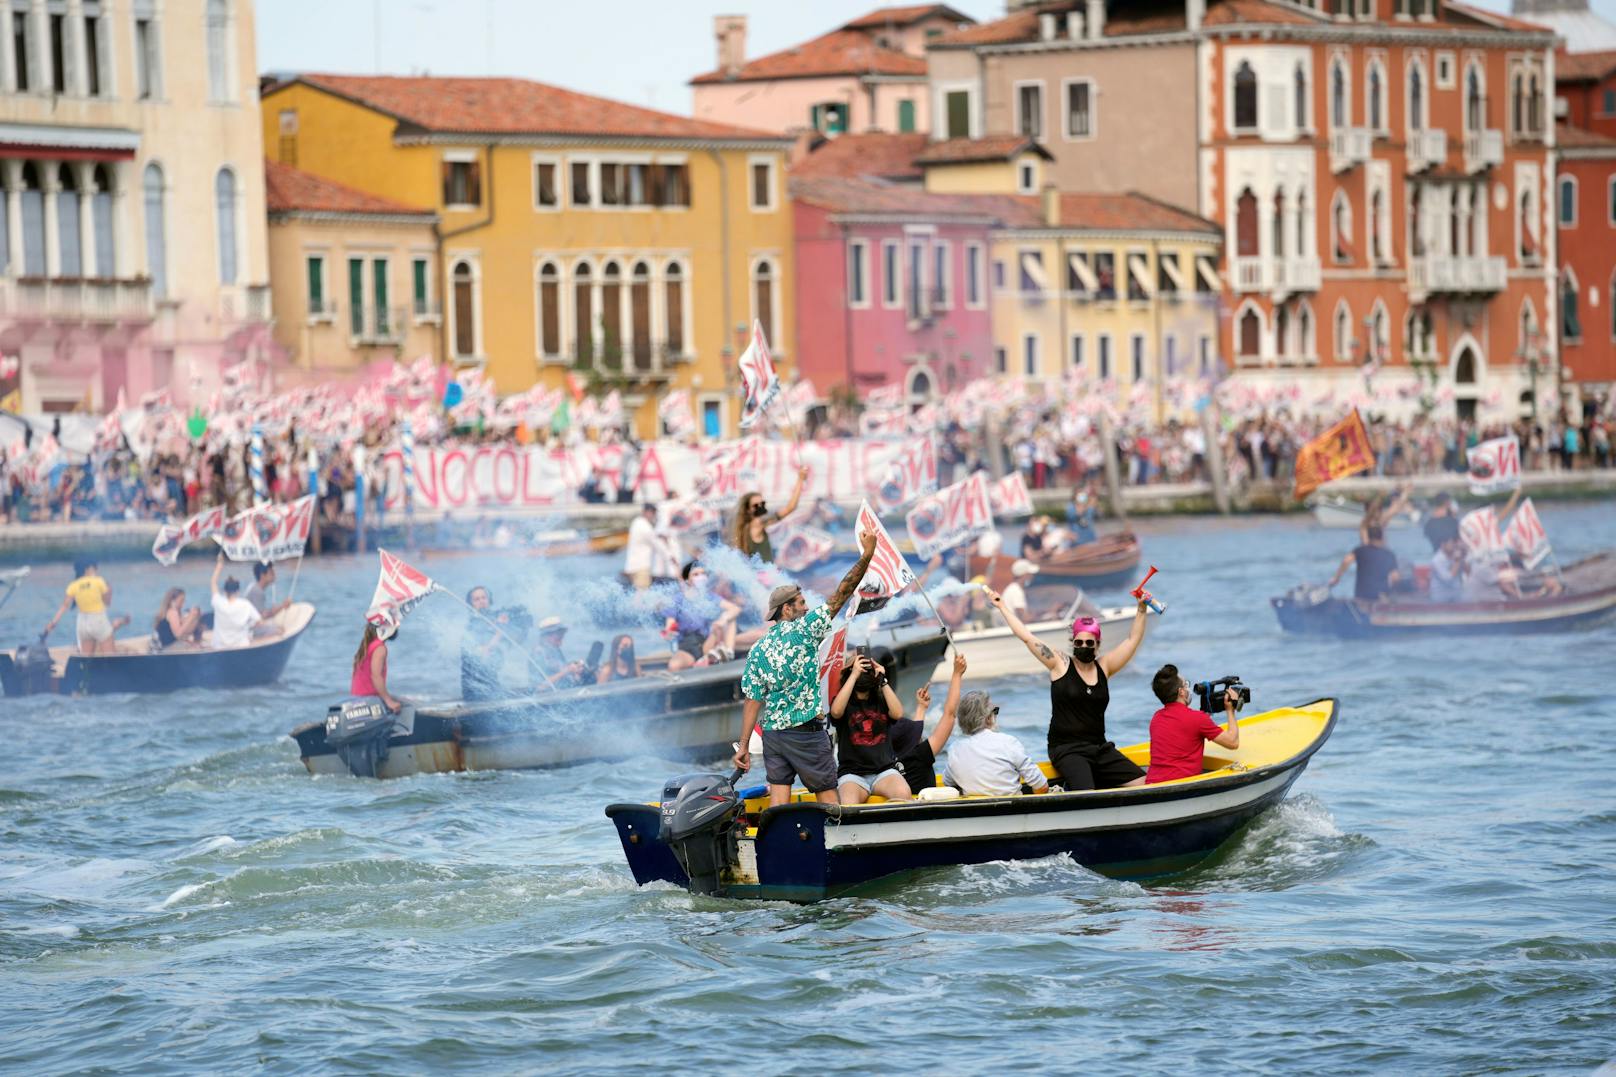 Nach jahrelangen Protesten dürfen große Schiffe vor San Marco und auf dem Giudecca-Kanal ab dem 1. August nicht mehr durchfahren. Archivfoto vom 05. Juni 2021.